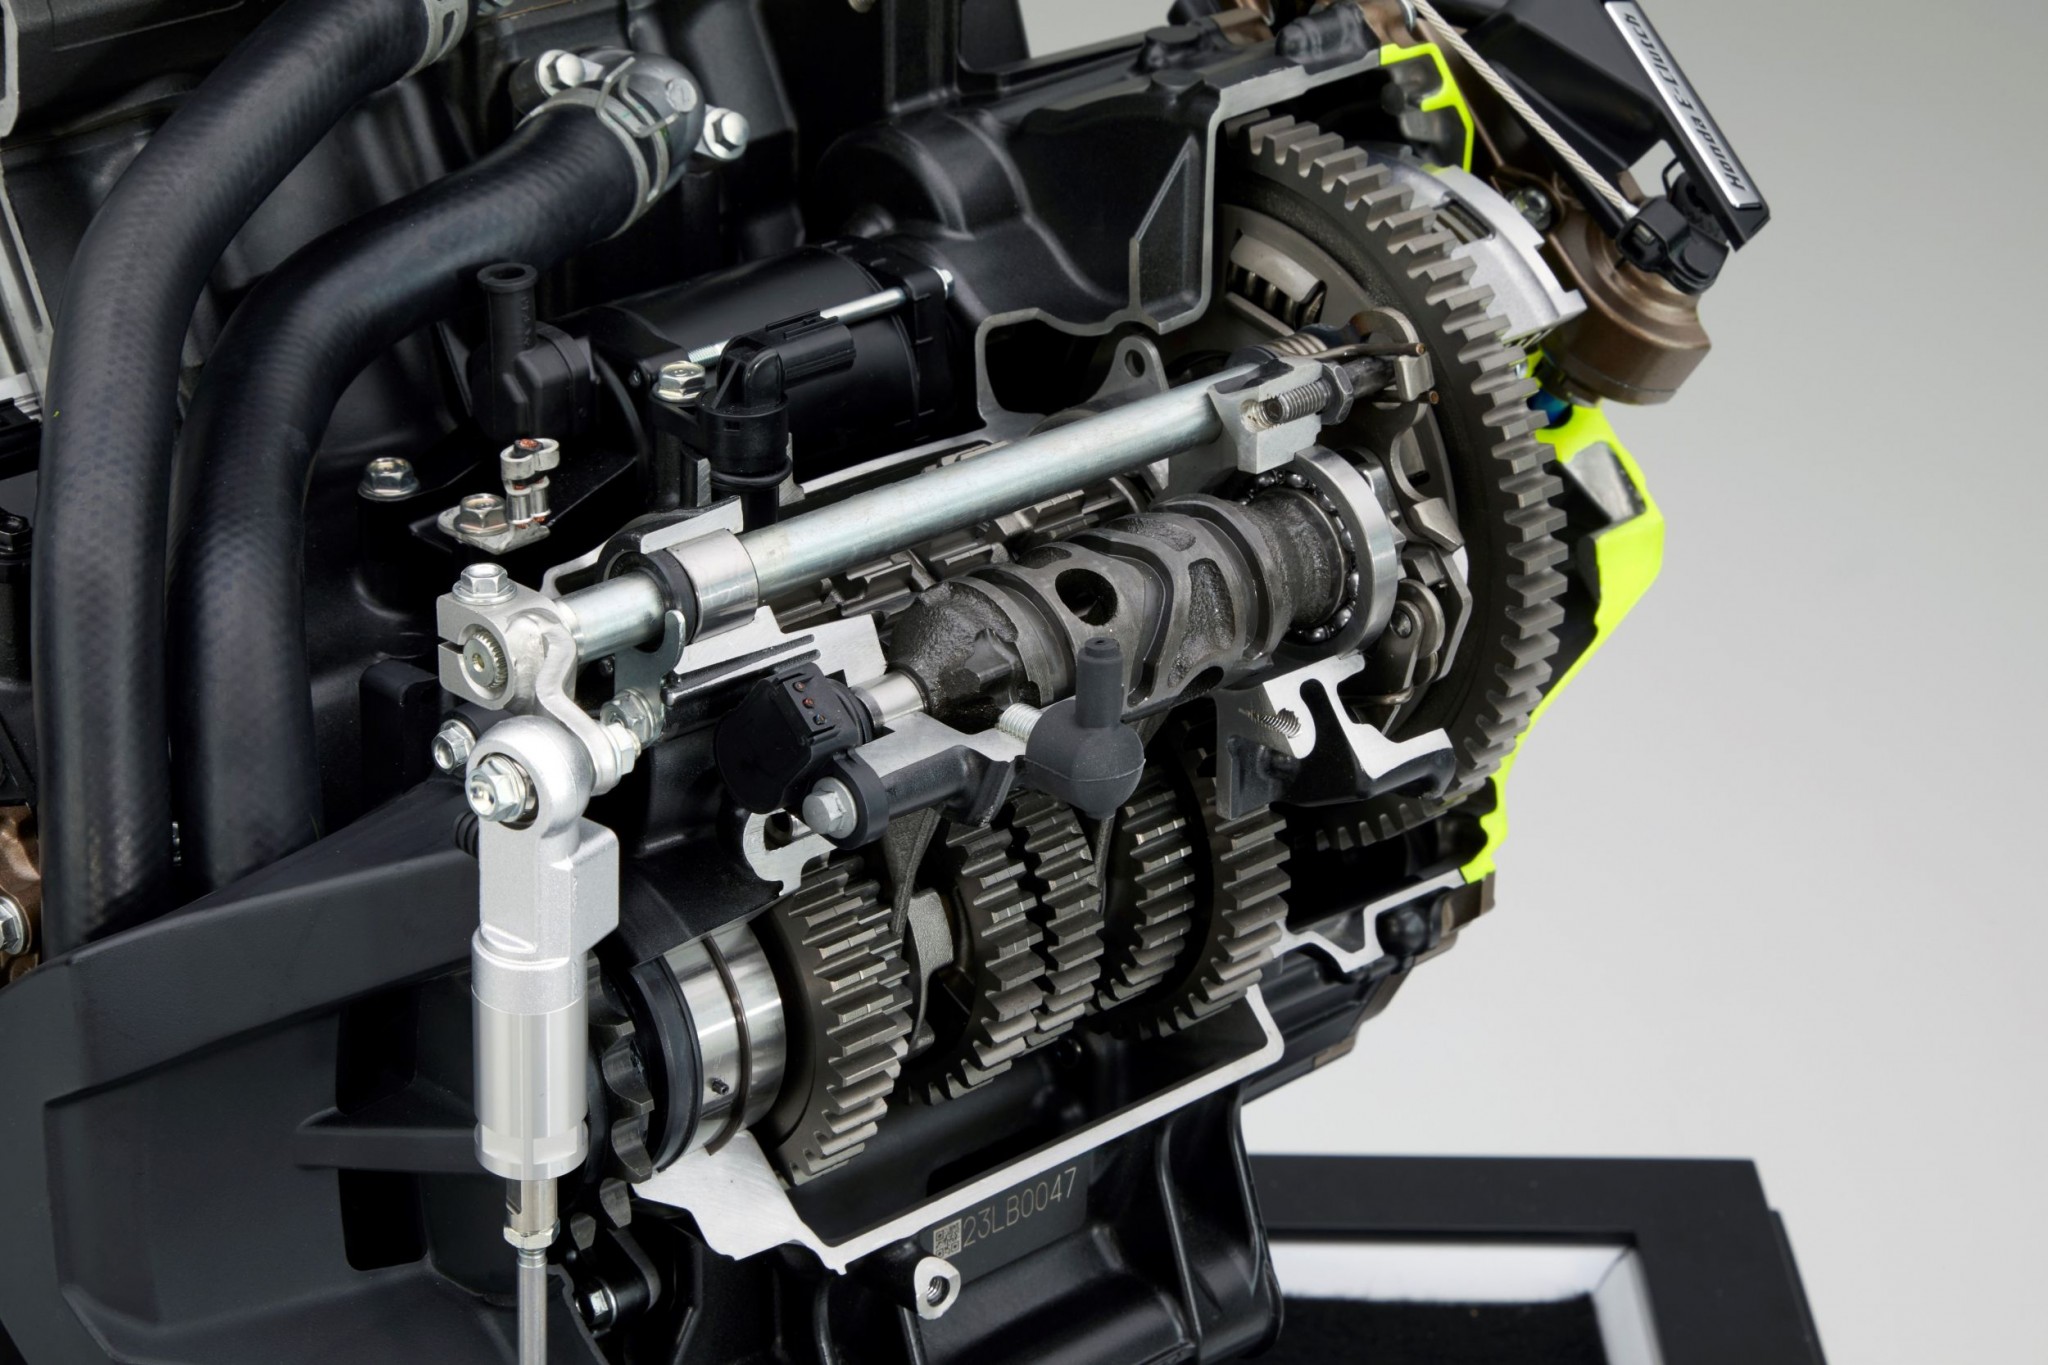 Test elektronske kvačila Honda CBR650R 2024

Honda je nedavno predstavila novu verziju svog popularnog motocikla CBR650R, koji sada dolazi sa elektronskim kvačilom, poznatim kao E-Clutch. Ova inovacija obećava da će olakšati vožnju omogućavajući vozačima da menjaju brzine bez potrebe za ručnim korišćenjem kvačila. 

Elektronsko kvačilo funkcioniše tako što automatski reguliše pritisak potreban za aktiviranje kvačila, što omogućava glatke promene brzina bez prekida u isporuci snage. Ovo je posebno korisno pri vožnji u gradu, gde česte promene brzina mogu biti naporne i otežavaju koncentraciju na saobraćaj.

Testiranje ovog sistema pokazalo je da E-Clutch ne samo da olakšava upravljanje motociklom, već i povećava sigurnost vožnje. Vozači mogu da se fokusiraju na okolinu bez brige o mehaničkim aspektima vožnje, što je posebno važno za manje iskusne vozače.

Honda CBR650R sa elektronskim kvačilom biće dostupna na tržištu od 2024. godine i očekuje se da će privući veliki broj kupaca, kako iskusnih tako i onih koji tek ulaze u svet motociklizma. Ovaj model predstavlja značajan korak napred u tehnologiji motocikala i potencijalno postavlja nove standarde u industriji. - Слика 31